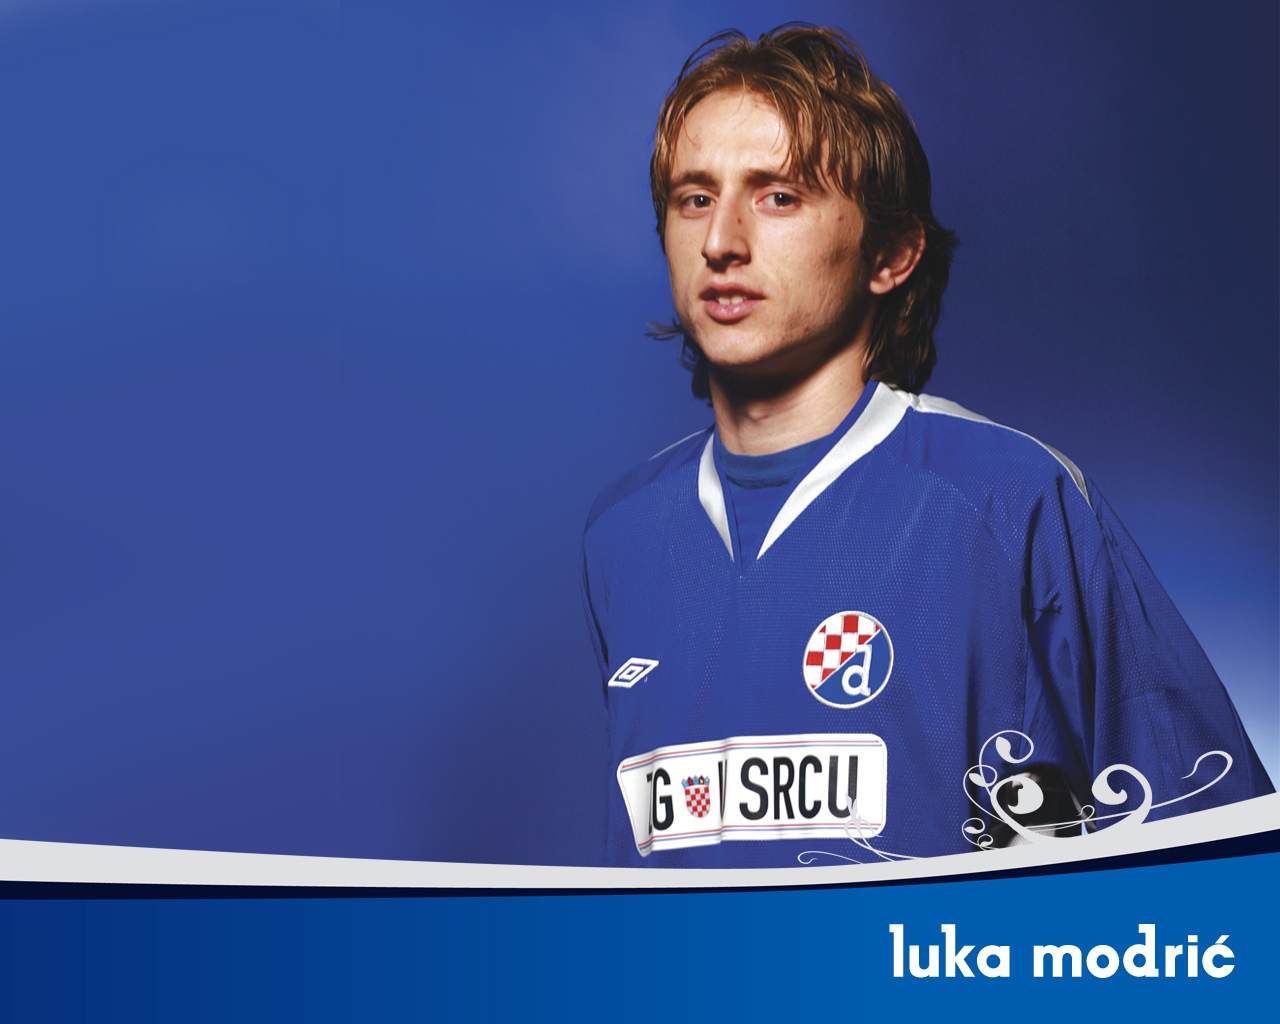 Luka Modric Young , HD Wallpaper & Backgrounds